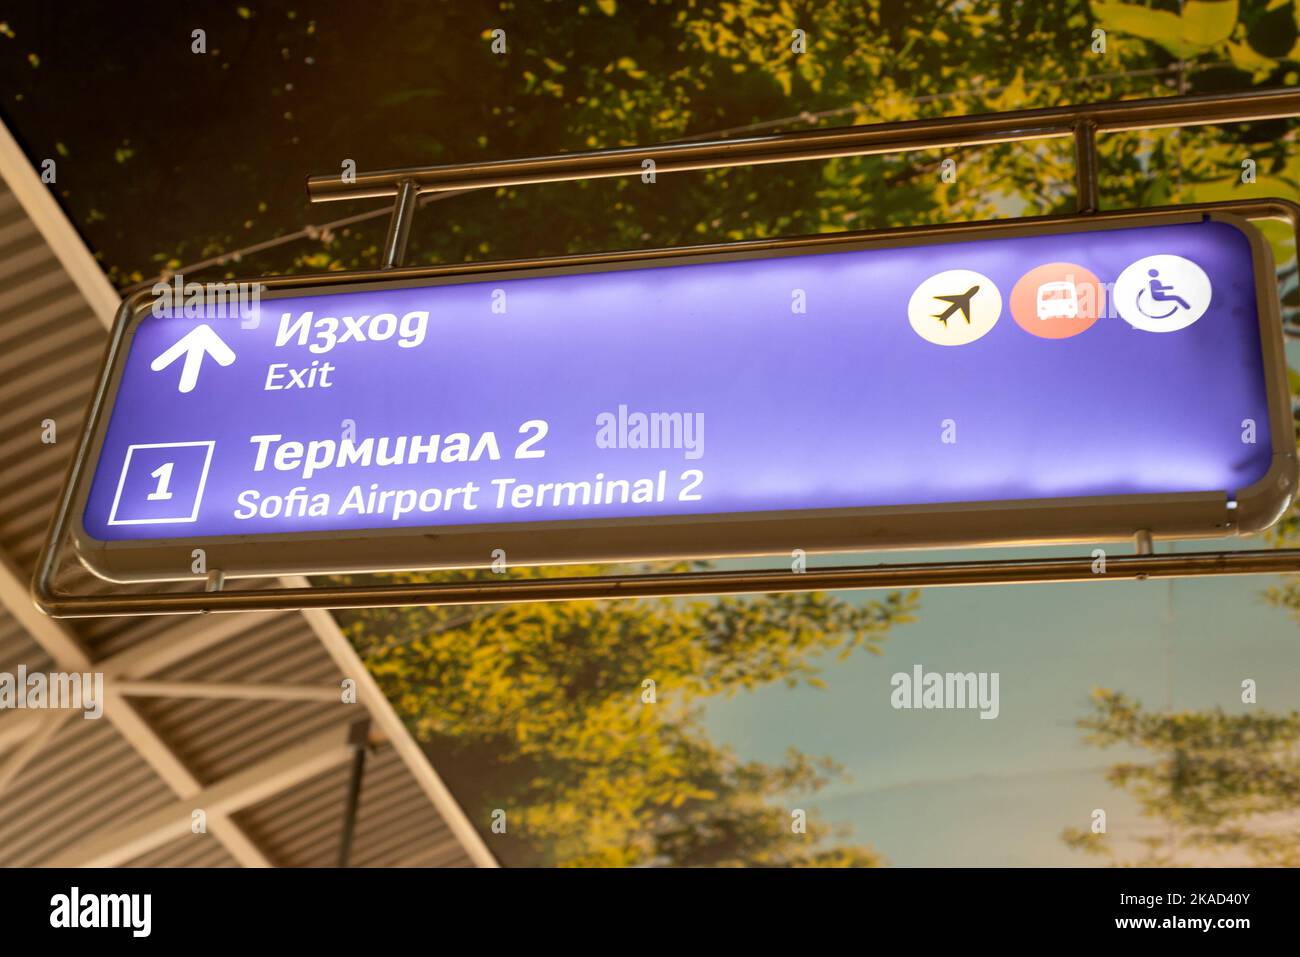 Segnale del terminal 2 dell'aeroporto di Sofia presso la stazione della metropolitana, Sofia, Bulgaria, Europa orientale, Balcani, UE Foto Stock